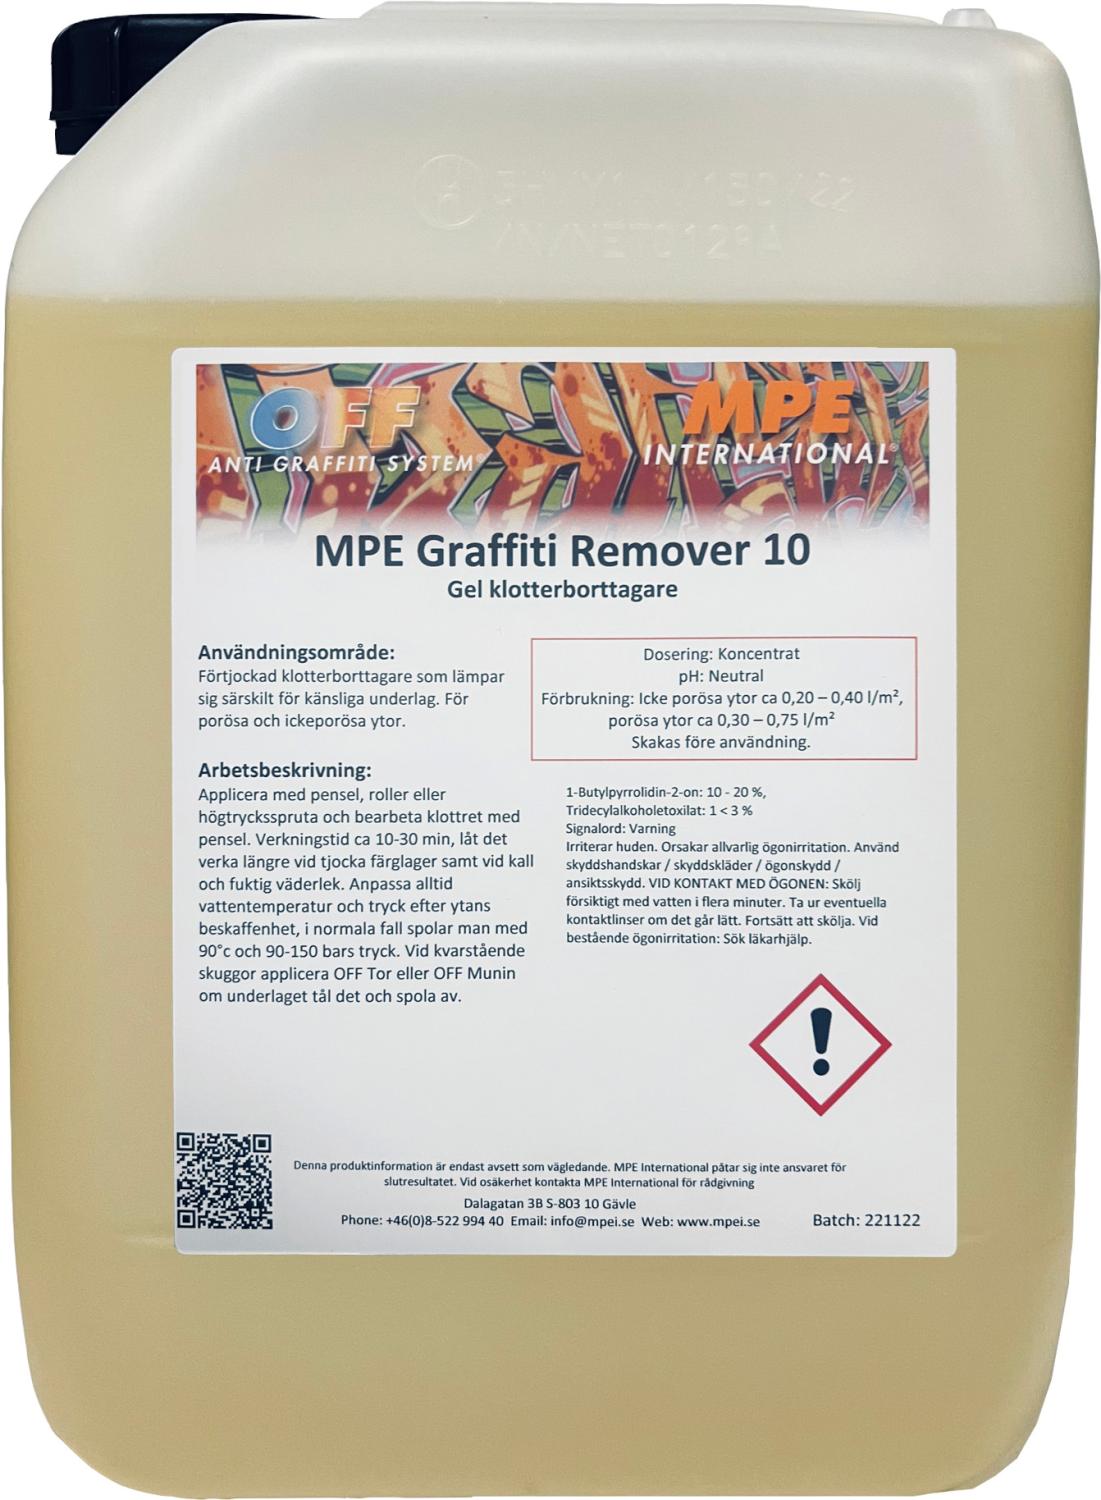 MPE Graffiti Remover 10, Gel